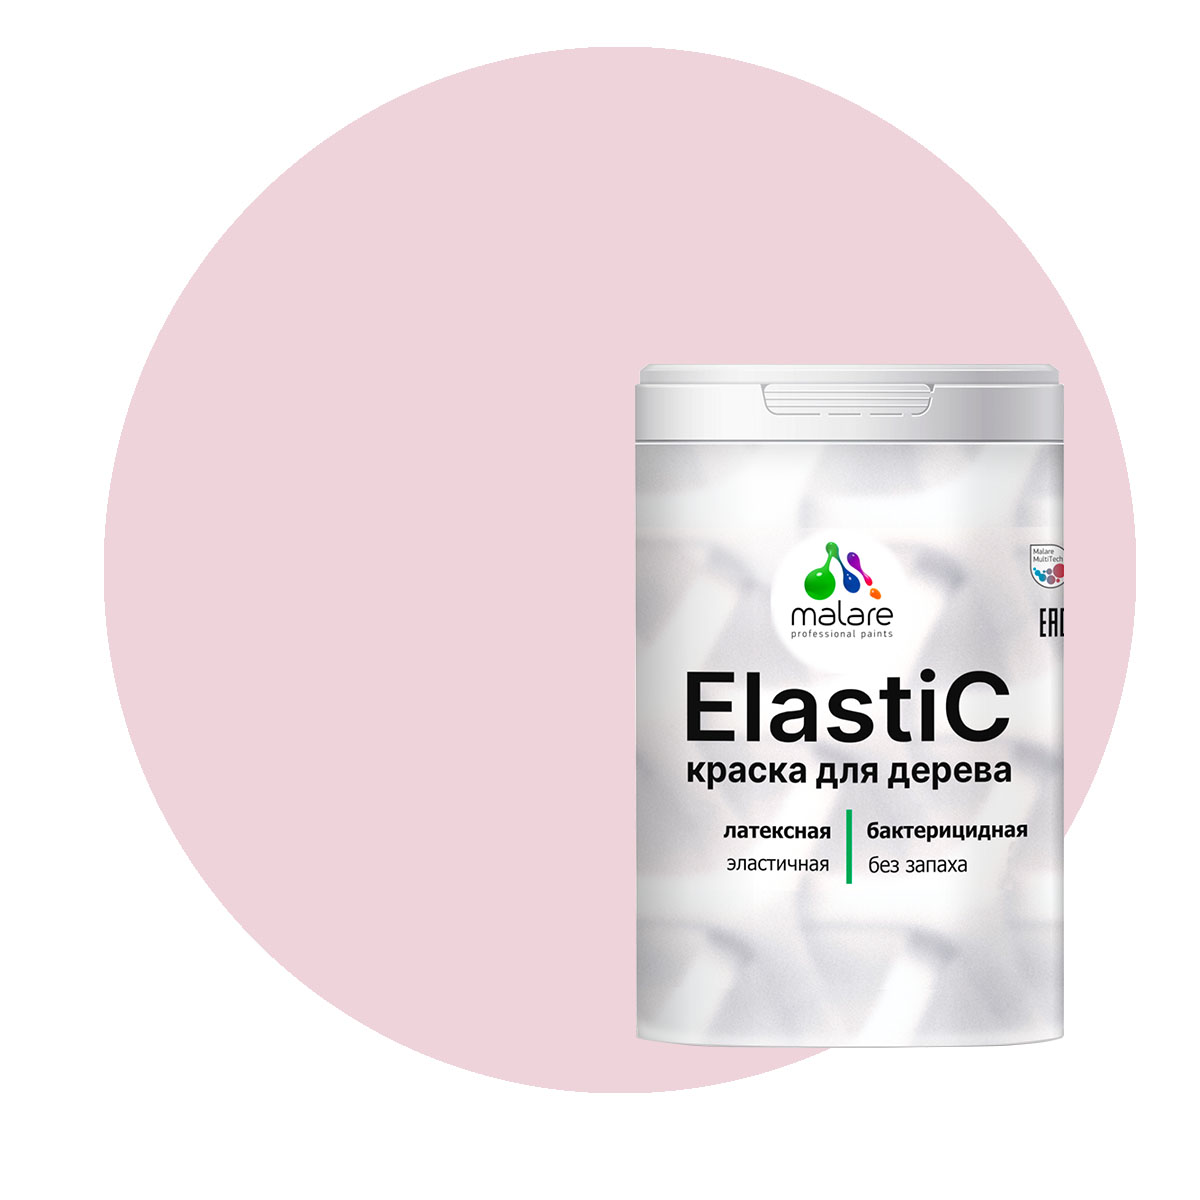 Краска Malare Elastic для деревянных поверхностей, бледно-розовый, 2 кг. косметичка на молнии матовый розовый